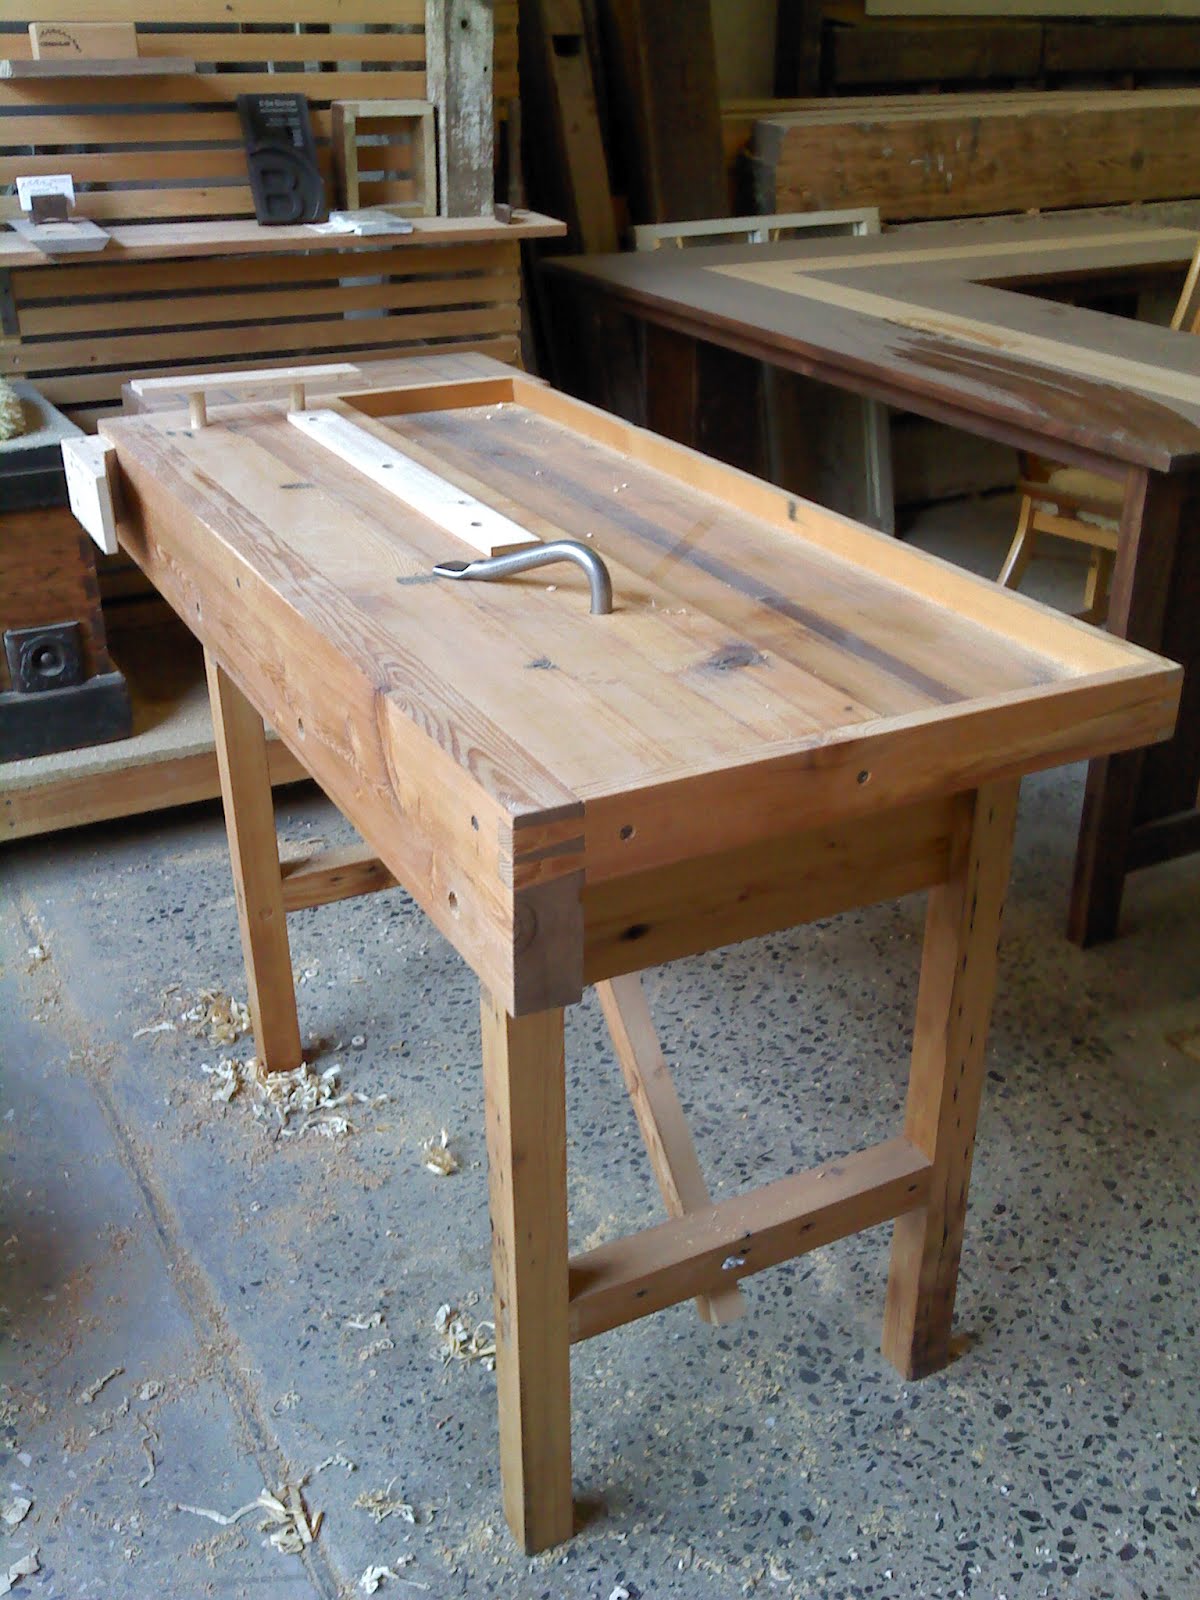 Michael Ferrin Woodworking: Folding Workbench Part II